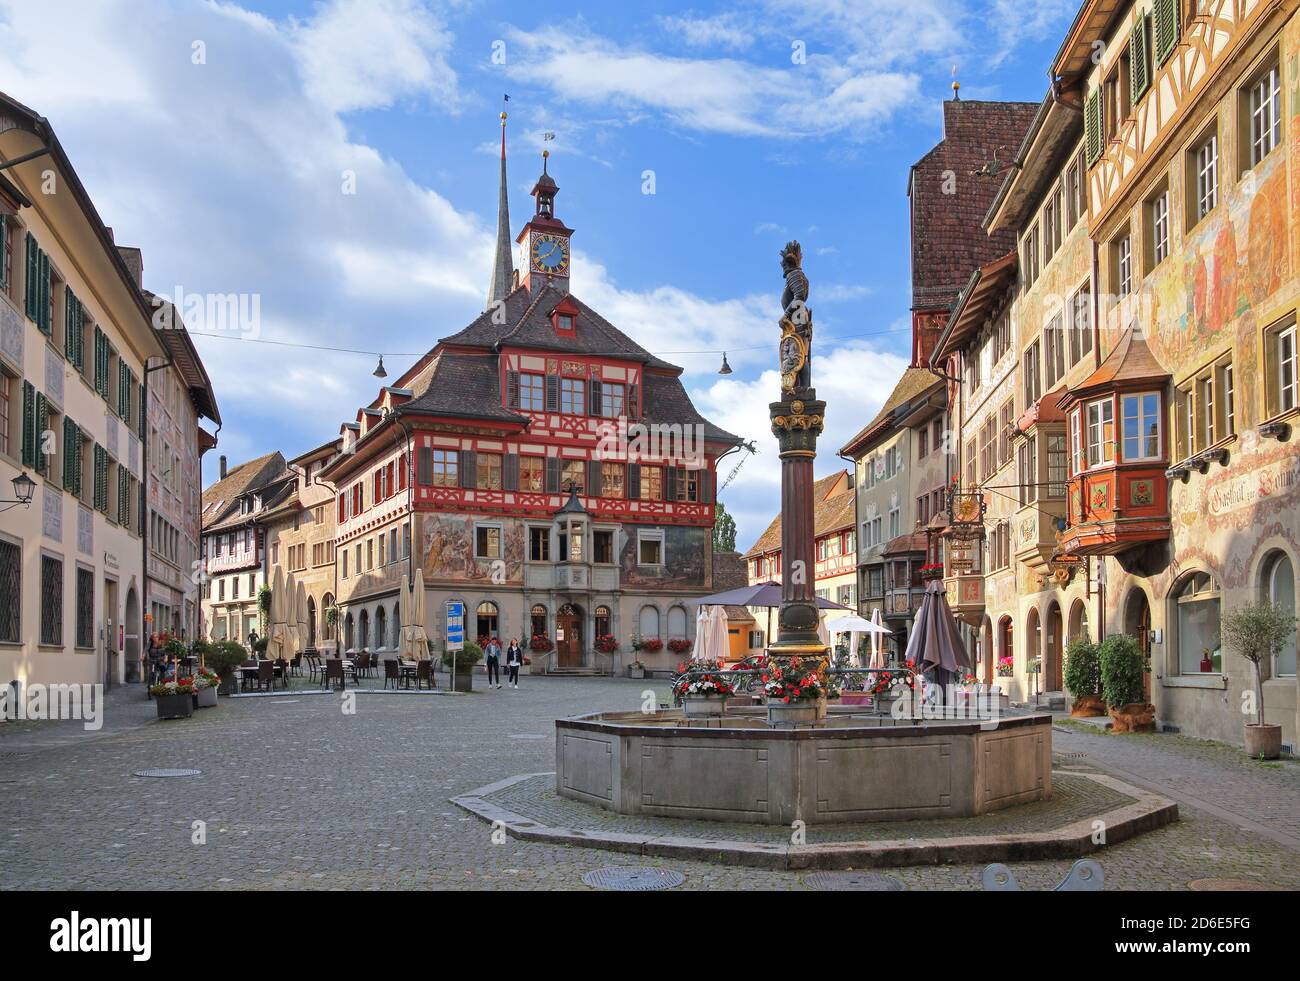 Rathausplatz mit Rathaus, bemalten Hausfassaden und Brunnen in der Altstadt, Stein am Rhein, Rheintal, Kanton Schaffhausen, Schweiz Stockfoto